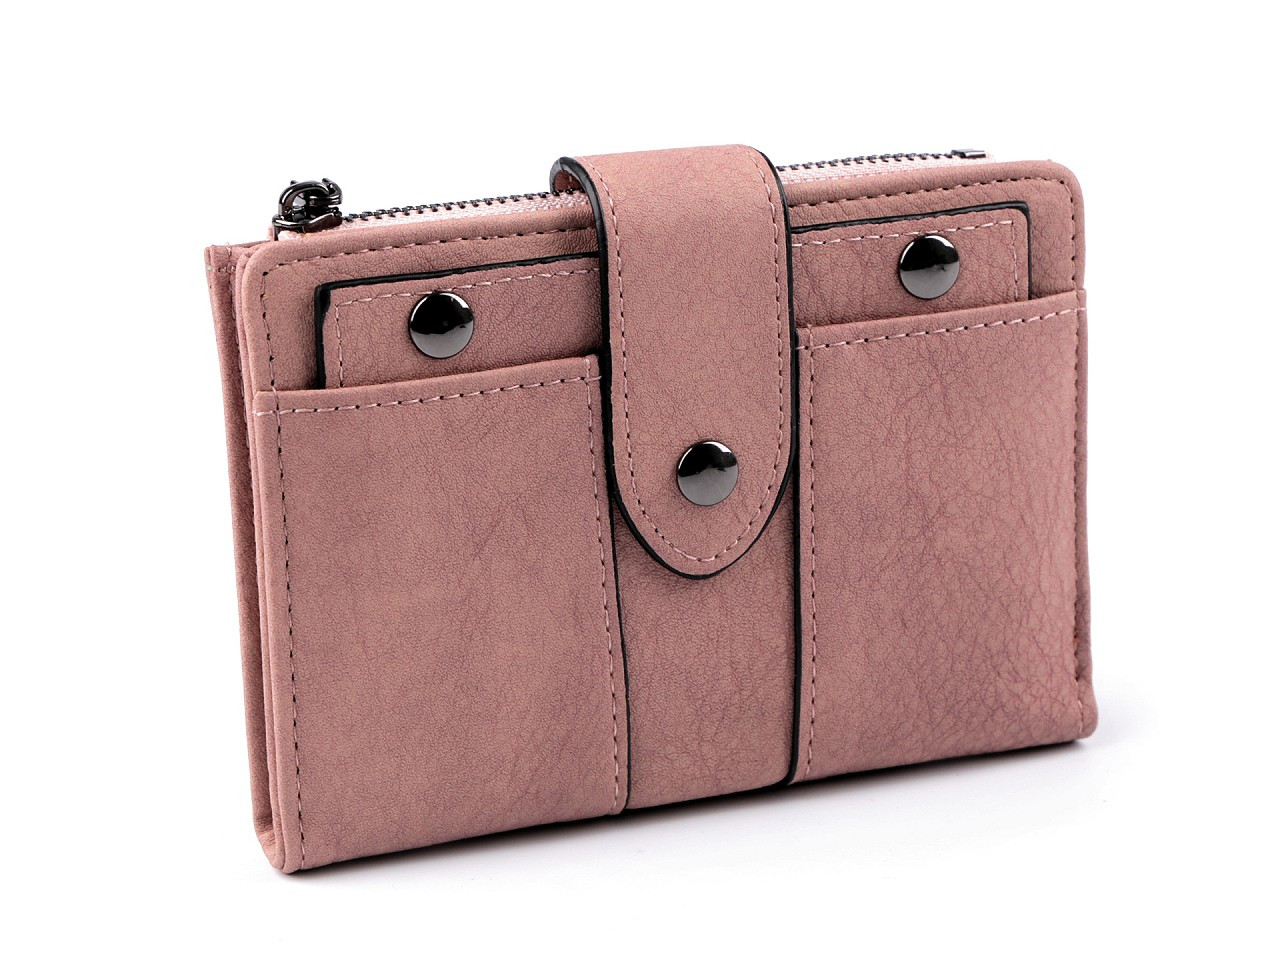 Dámská peněženka s přezkou 9,5x13,5 cm, barva 1 pudrová tmavá